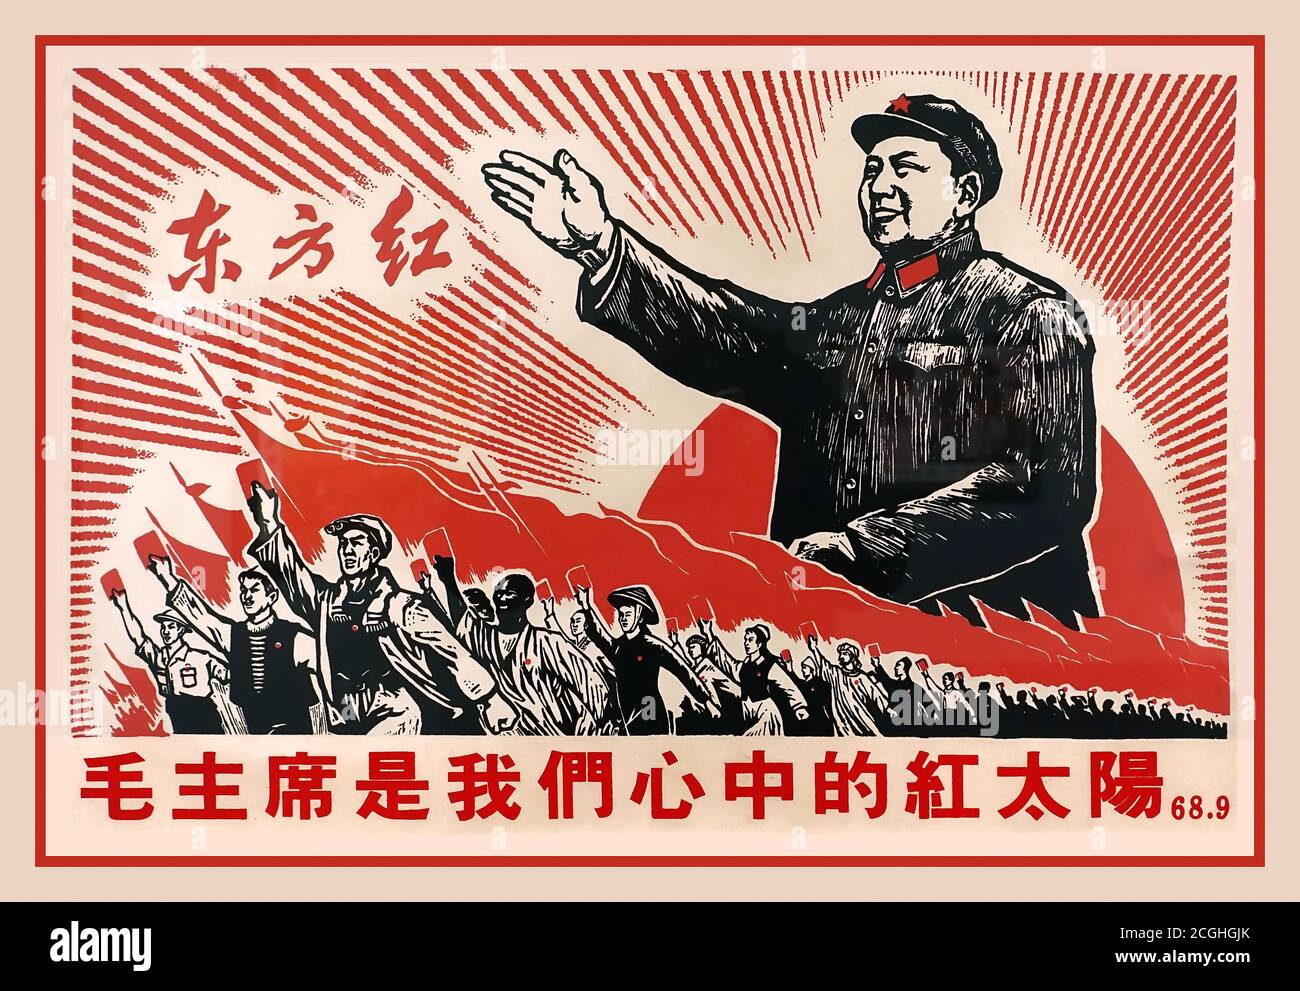 VORSITZENDER MAO Vintage 1960s Chinese Revolution Propaganda Poster mit Slogan "Vorsitzender Mao ist die rote Sonne in unseren Herzen", 68.9 Volksrepublik China, 1968, Lithographie. Vorsitzender Mao war ein chinesischer Kommunist, der zum Gründungsvater der Volksrepublik China (PRC) wurde, die er von ihrer Gründung 1949 bis zu seinem Tod 1976 als Vorsitzender der Kommunistischen Partei Chinas regierte. Stockfoto